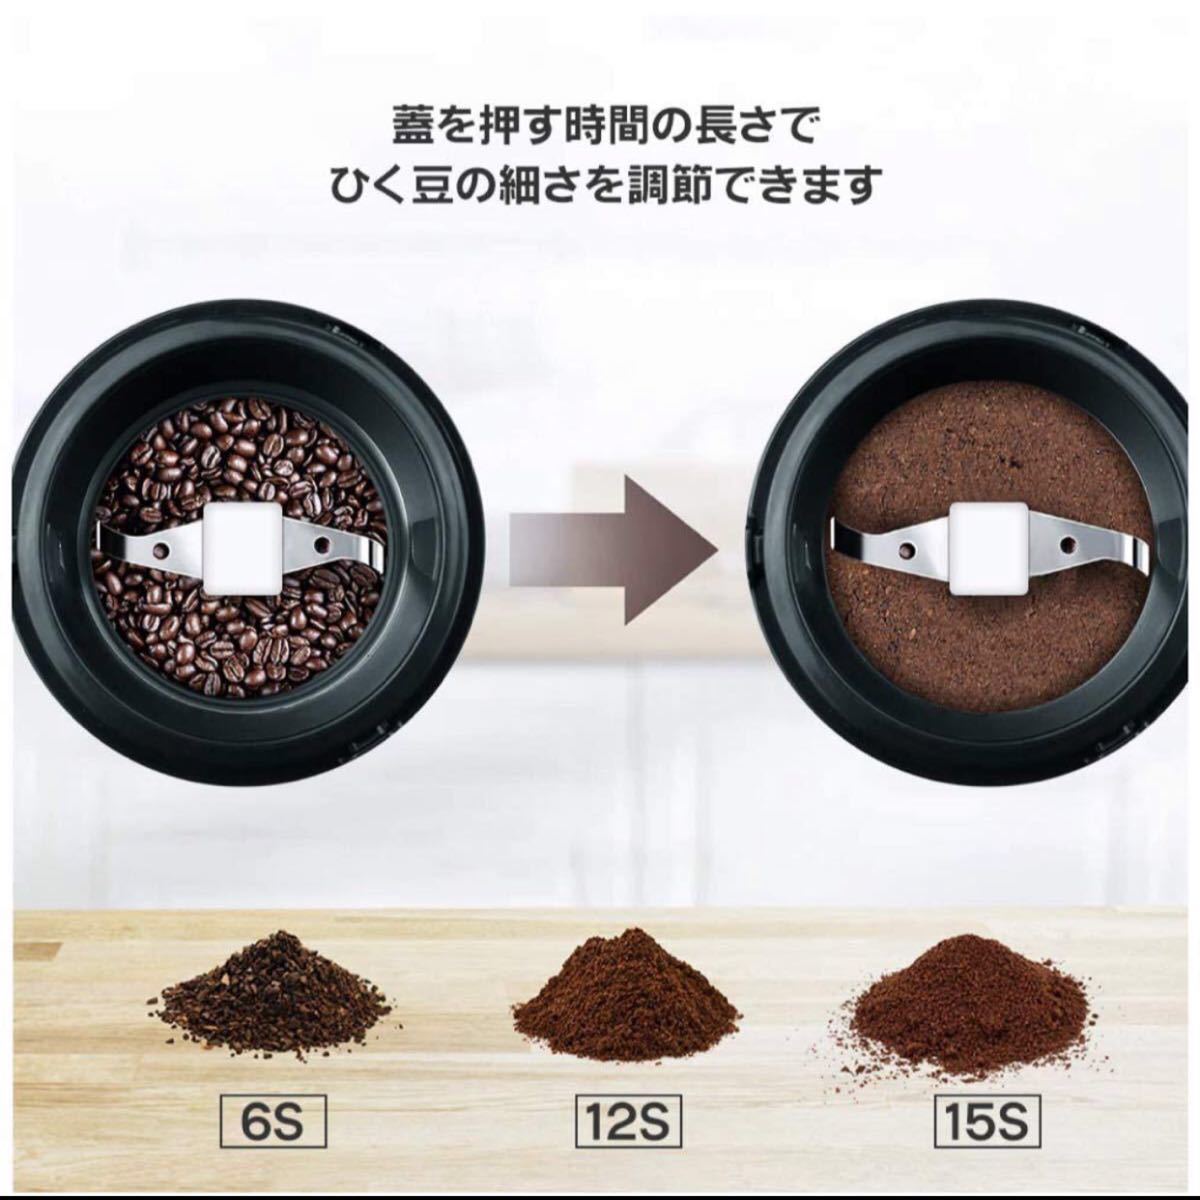 コーヒーミル 電動 水洗い可能 コーヒーグラインダー みじん切り コーヒー豆 小型 一台多役 お手入れ簡単 